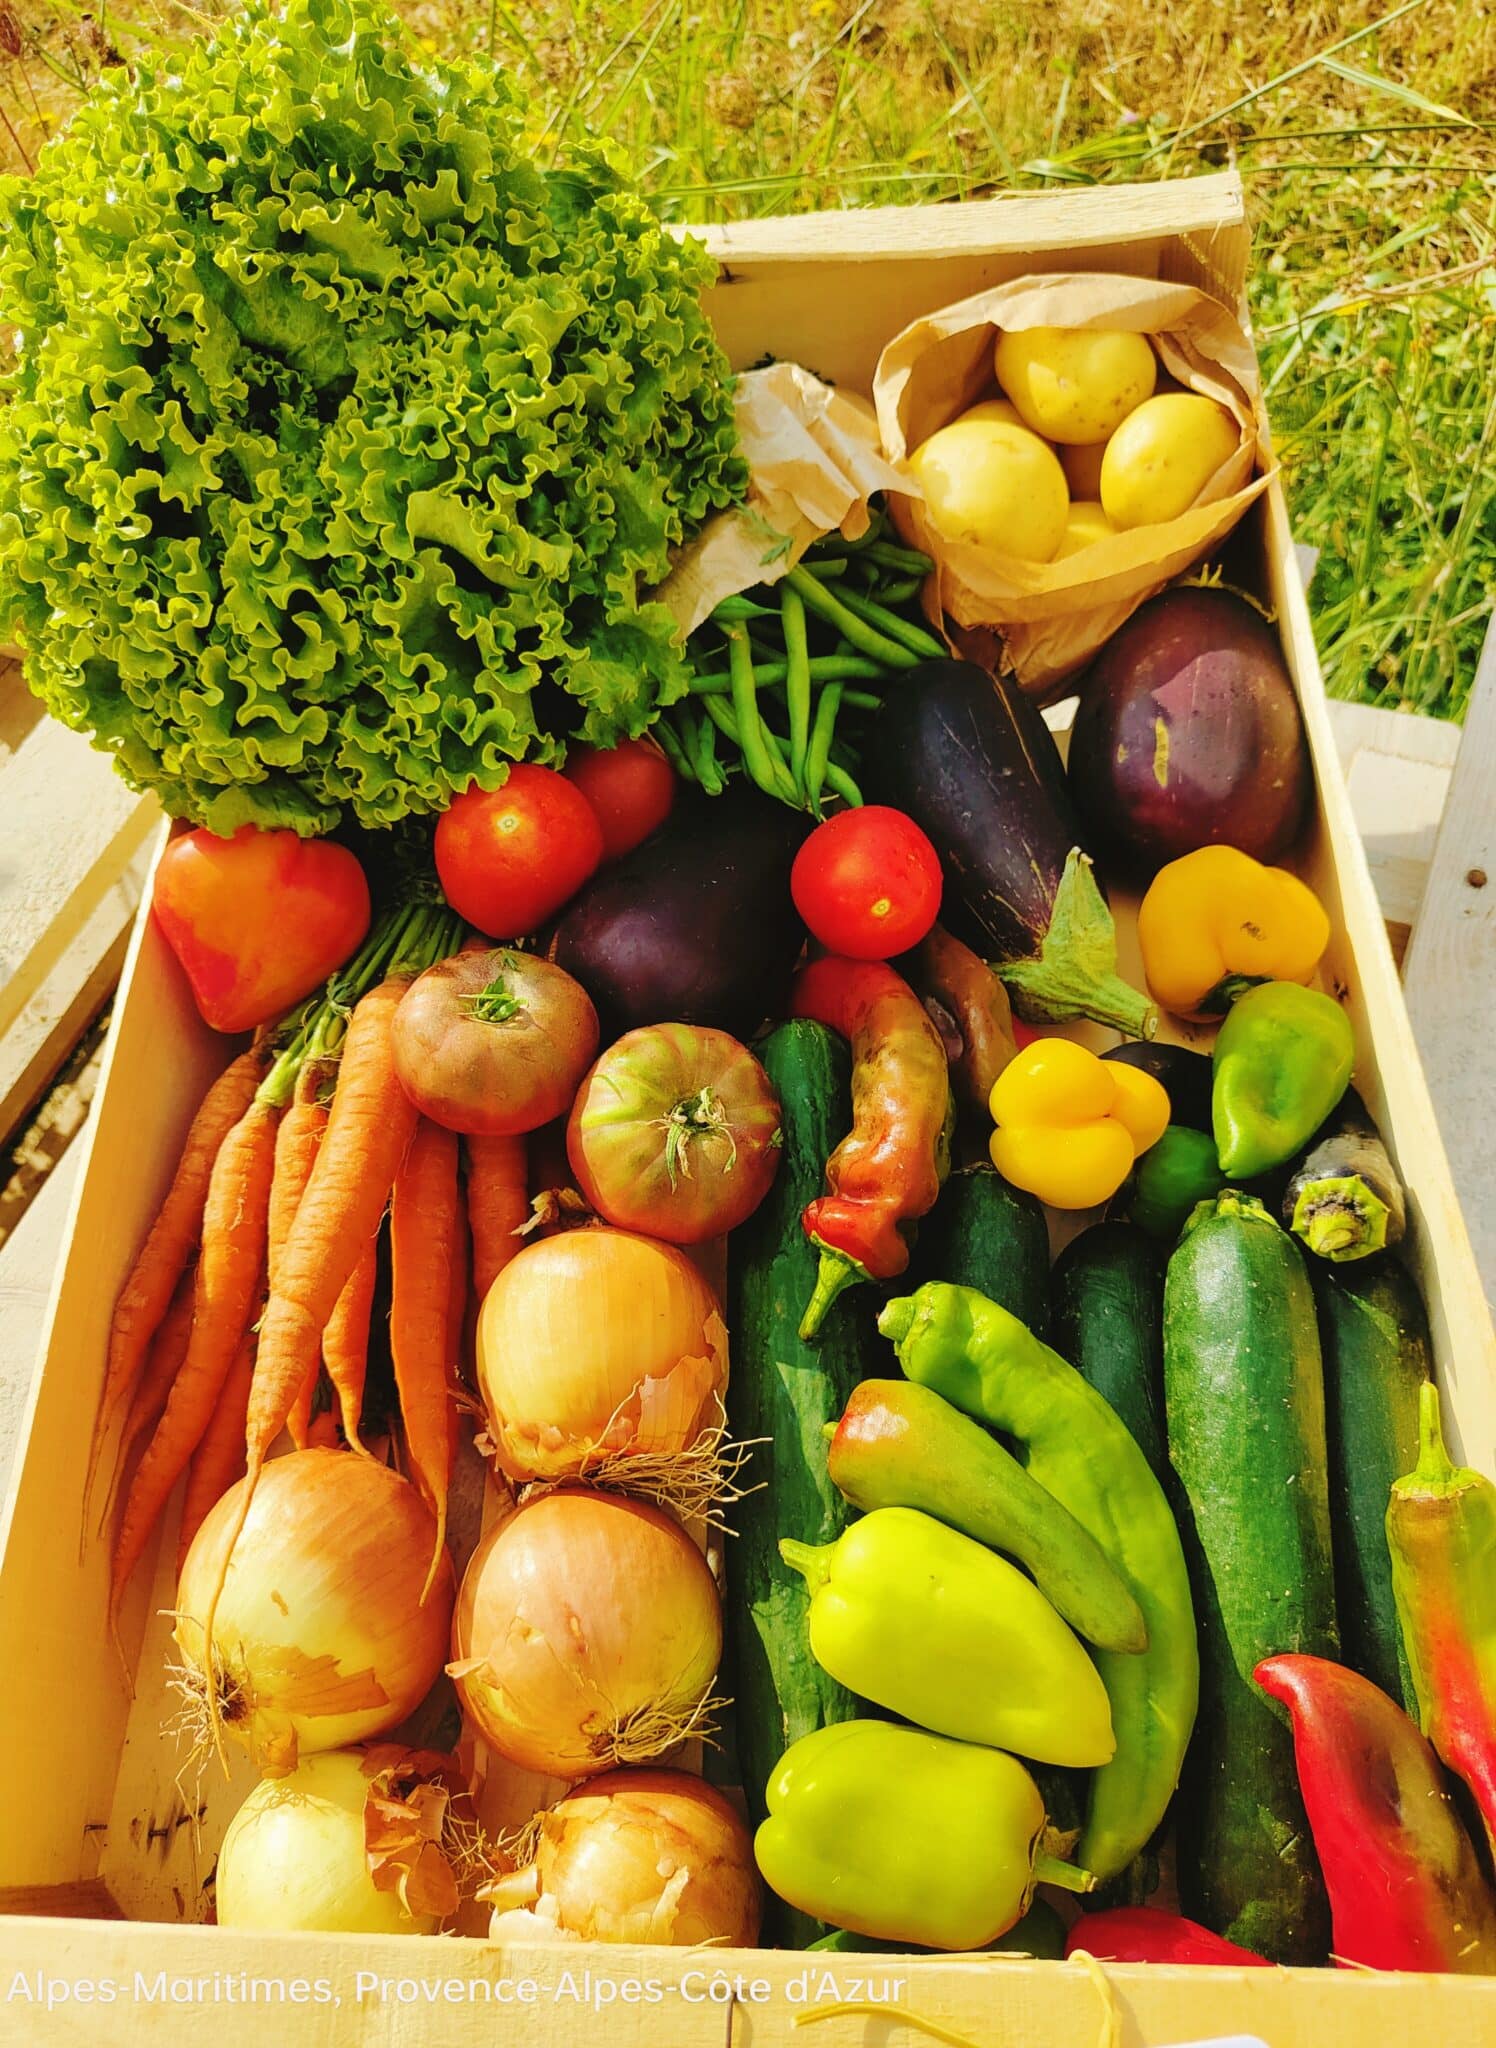 Livraison à domicile de paniers de légumes frais 7-8kg